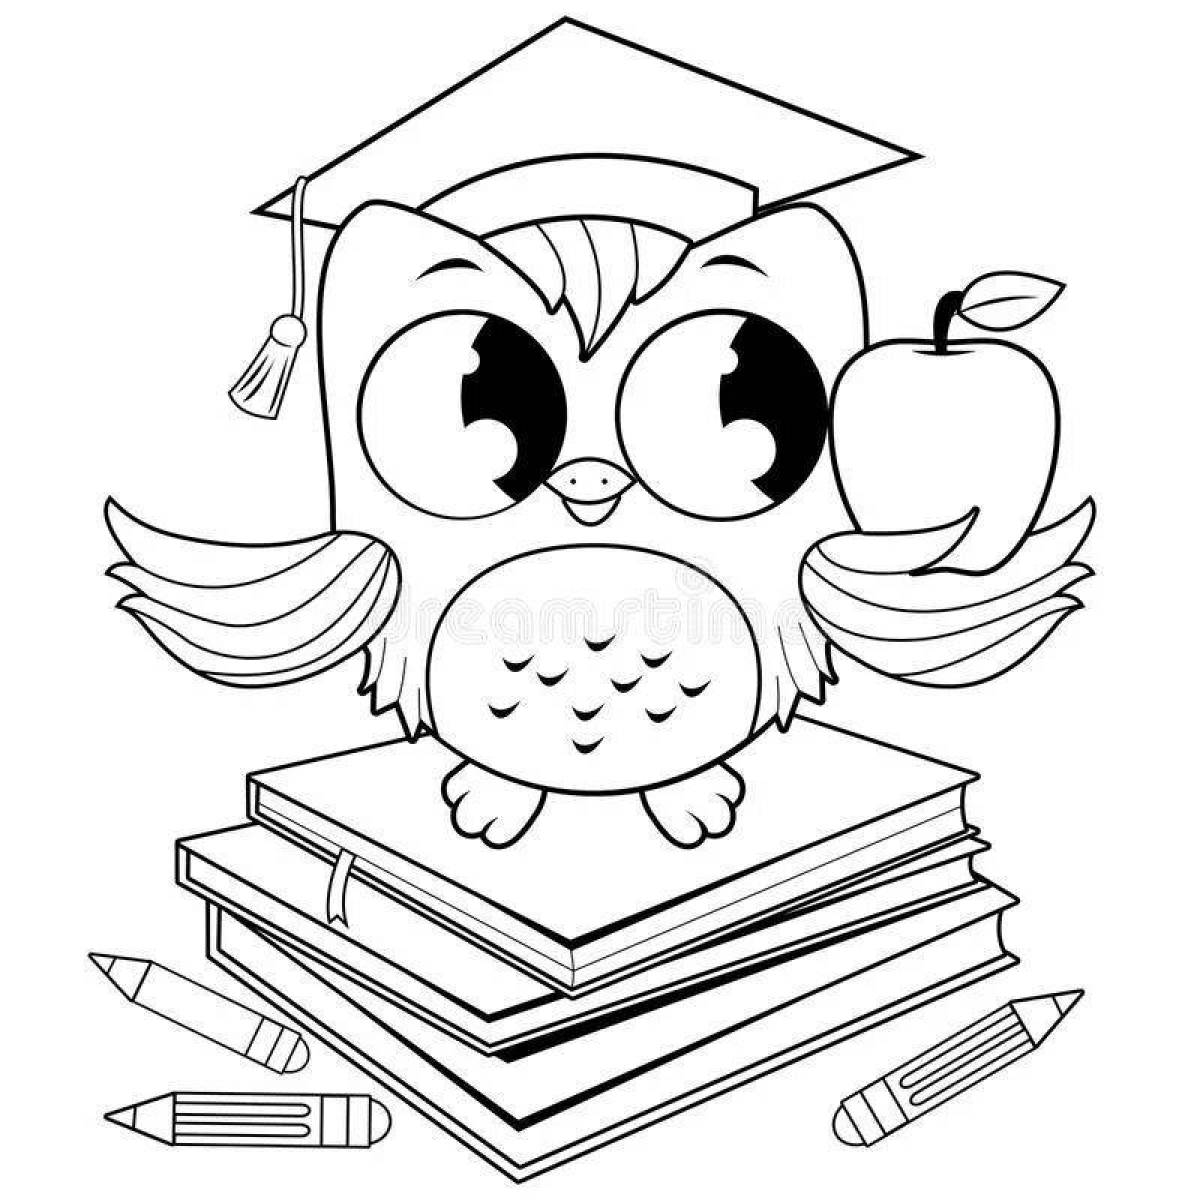 Adorable scientific owl coloring book